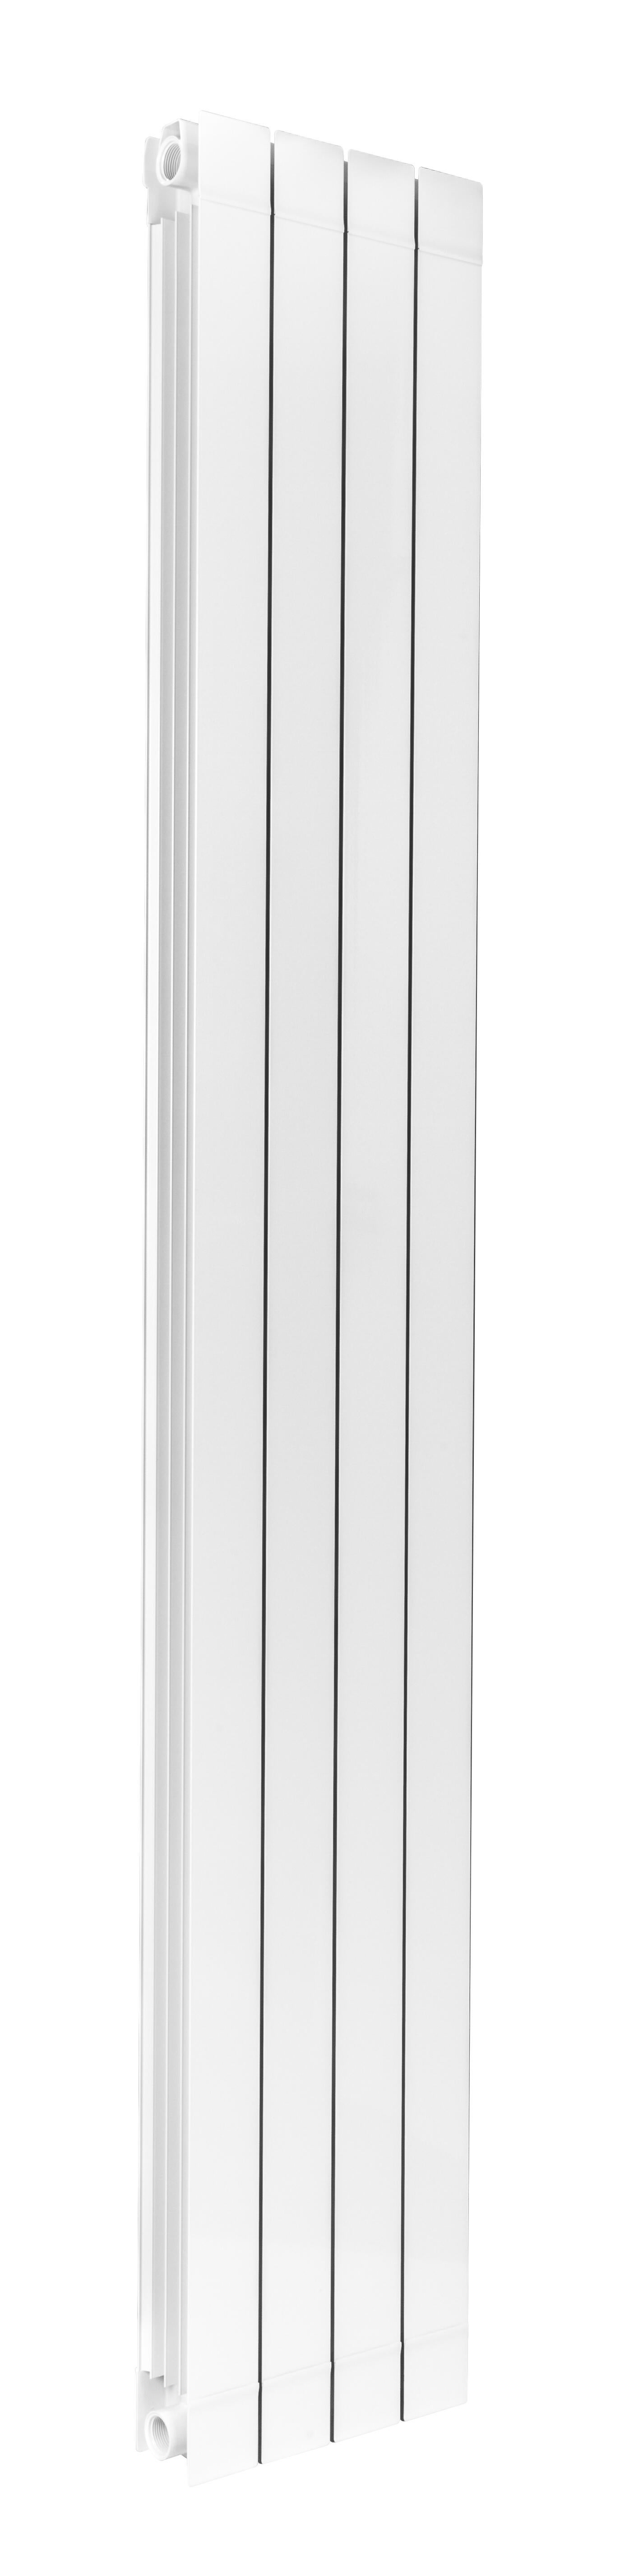 NELHYS - Radiateur eau chaude vertical - Blanc